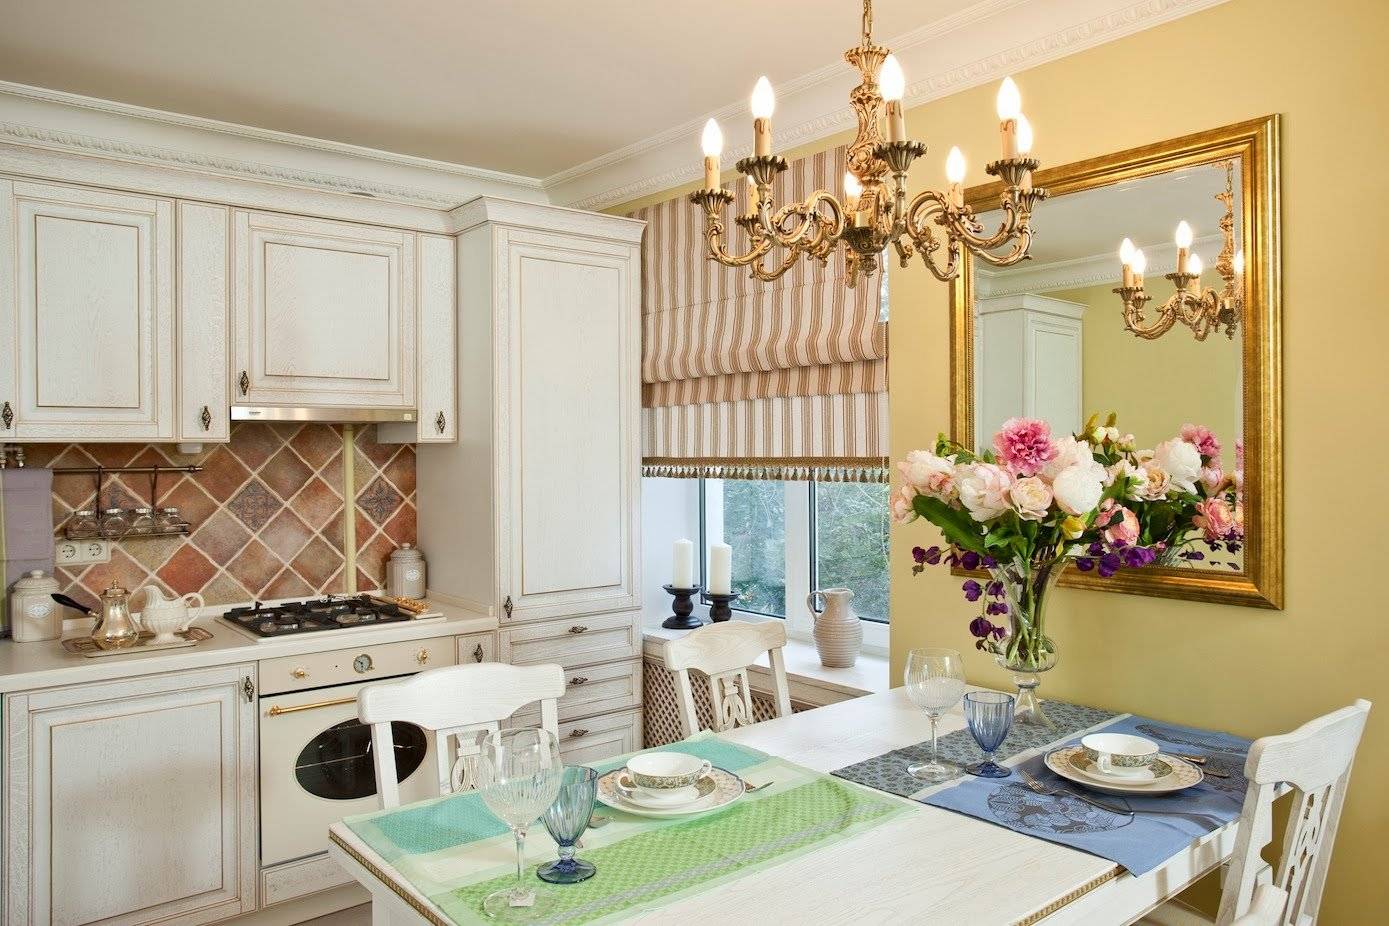 Кухня в стиле прованс: правильное сочетание всех элементов дизайна, 110 лучших фото идей оформления интерьера!